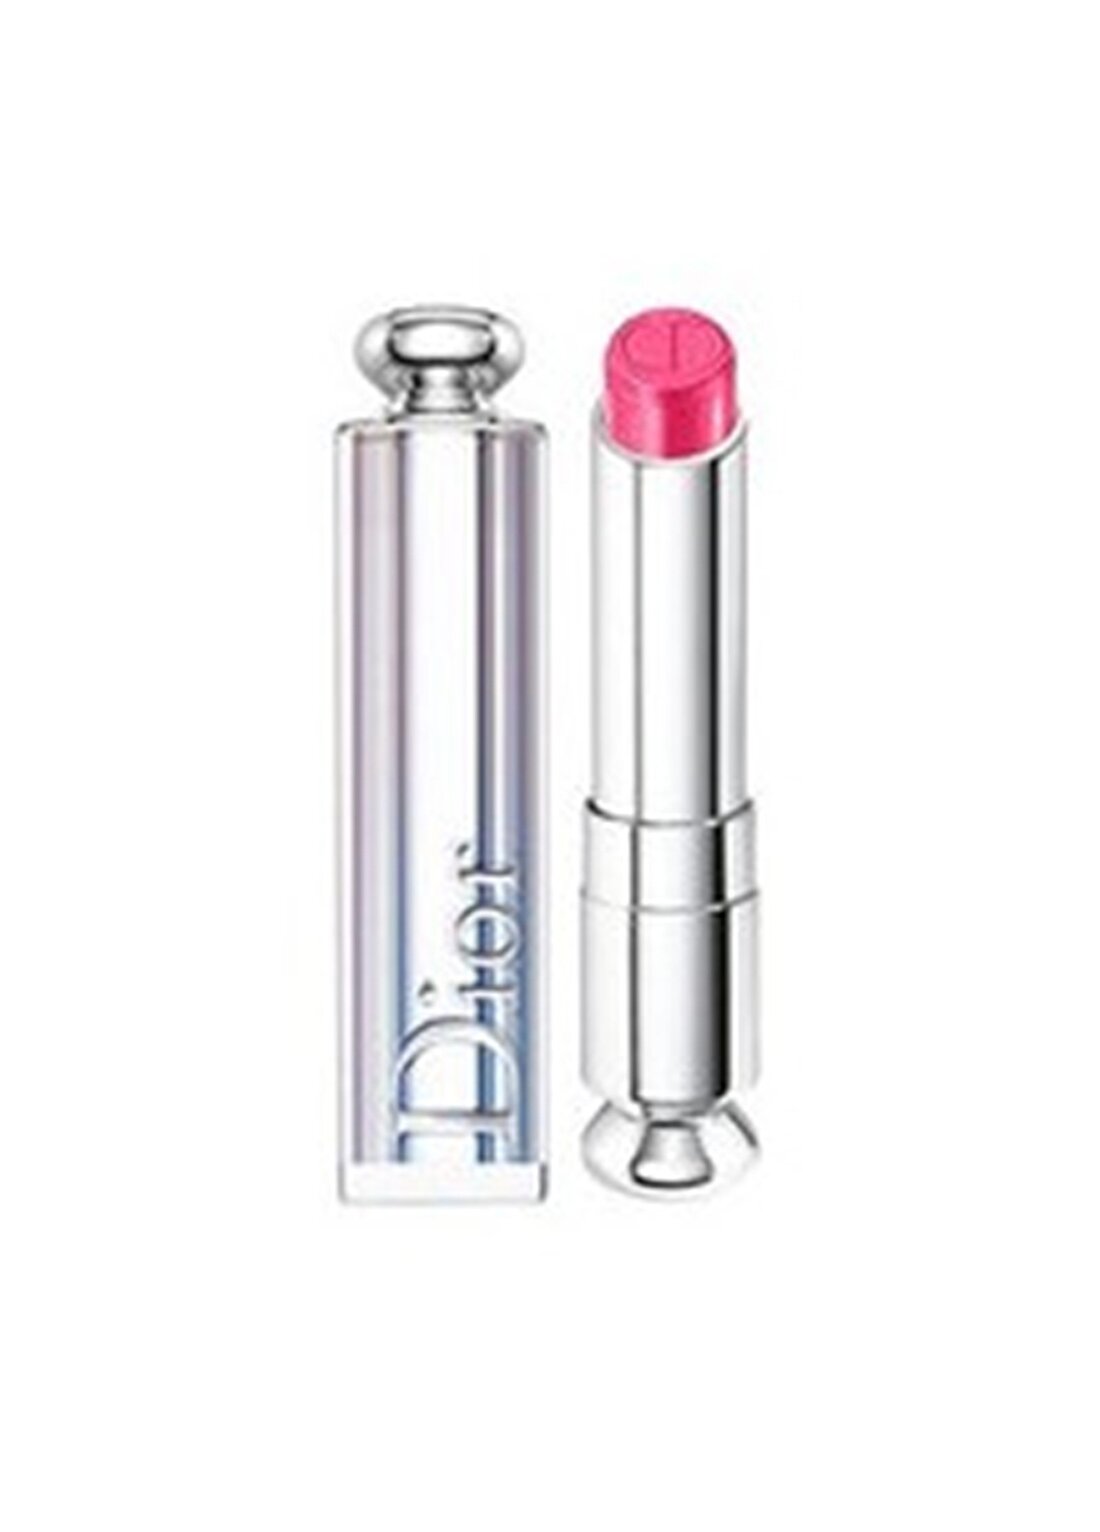 Dior Addict Lipstick 476 Neo Romantic Ruj Ruj